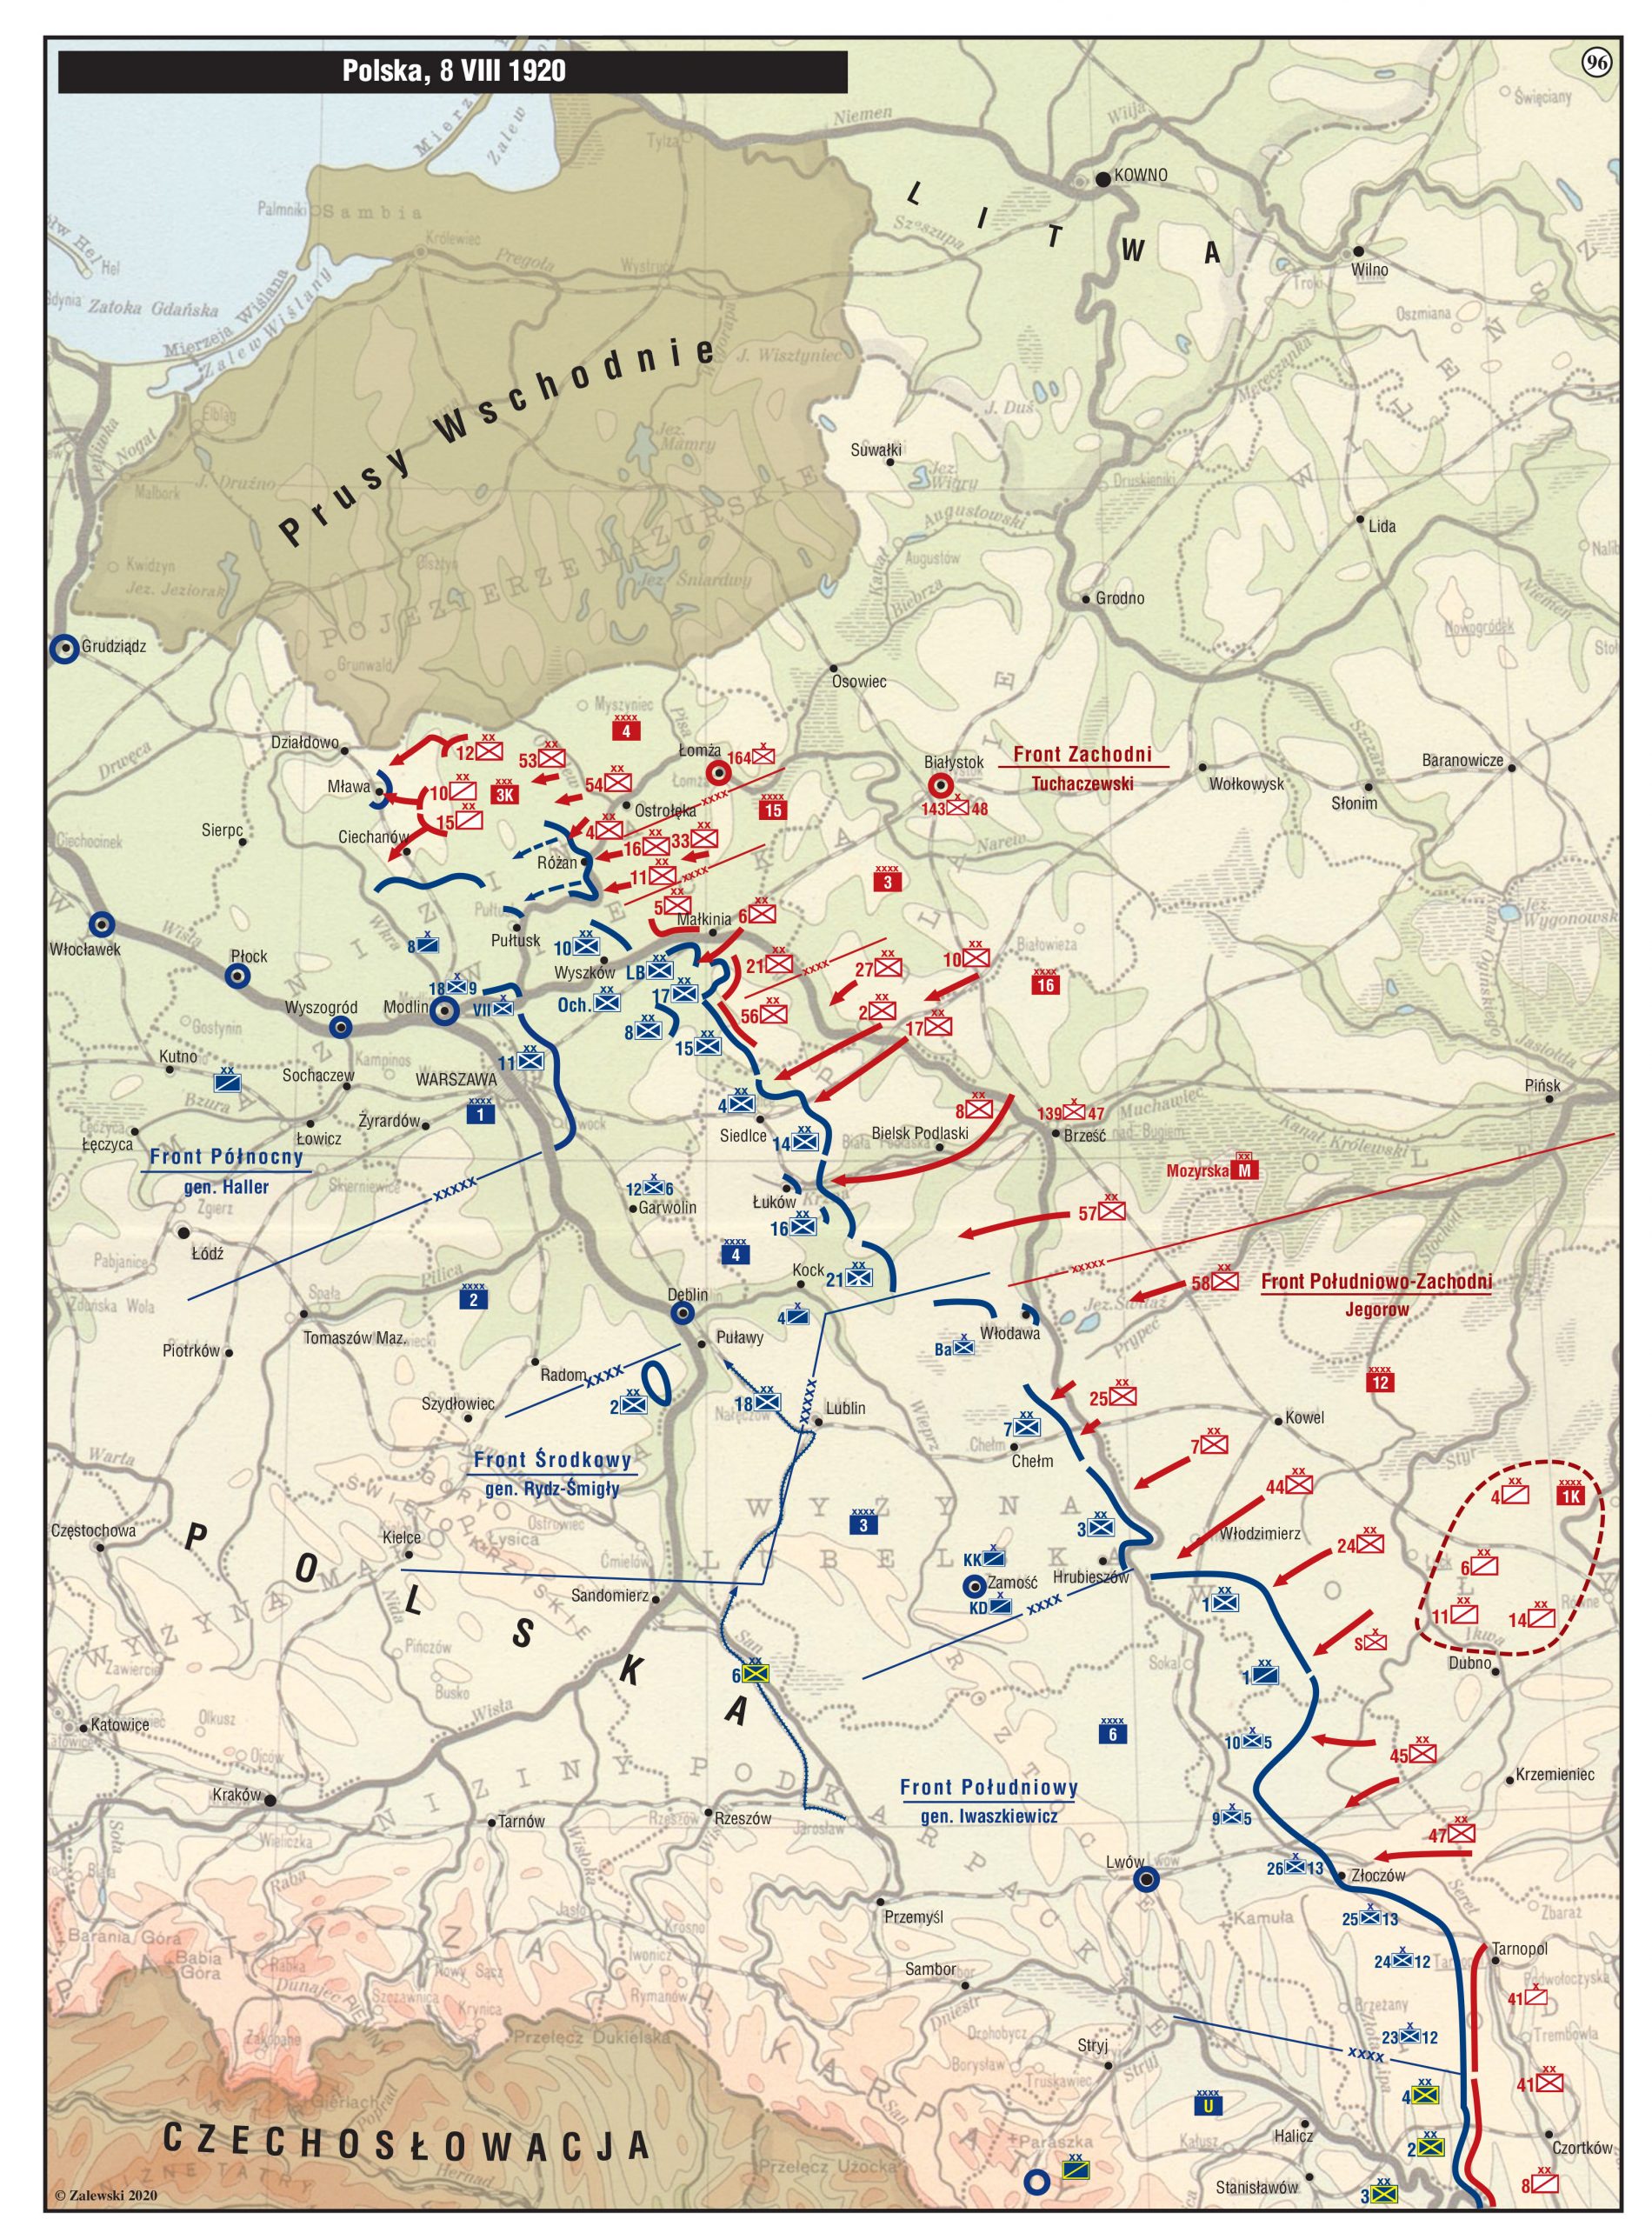 Barwna, podłużna mapa w pastelowej kolorystyce zieleni, żółcieni i oranżu. Kolorystyka służy wyeksponowaniu intensywnych czerwonych i granatowych elementów linii i ugrupowań frontów, biegnących po przekątnej od dolnego, prawego narożnika. Front polski zaznaczony jest na granatowo, front bolszewicki zaznaczony jest na czerwono. W lewym, górnym rogu mapy, na czarnym pasku umieszczony jest napis w białym kolorze: Polska, 8 sierpnia 1920.  U góry wyróżniony został obszar “Prusy wschodnie” i u dołu fragment Czechosłowacji. W lewym, dolnym rogu znajduje się oznaczenie praw autorskich z abrewiaturą (literą C w okręgu) przy nazwisku Zalewski 2020. 

